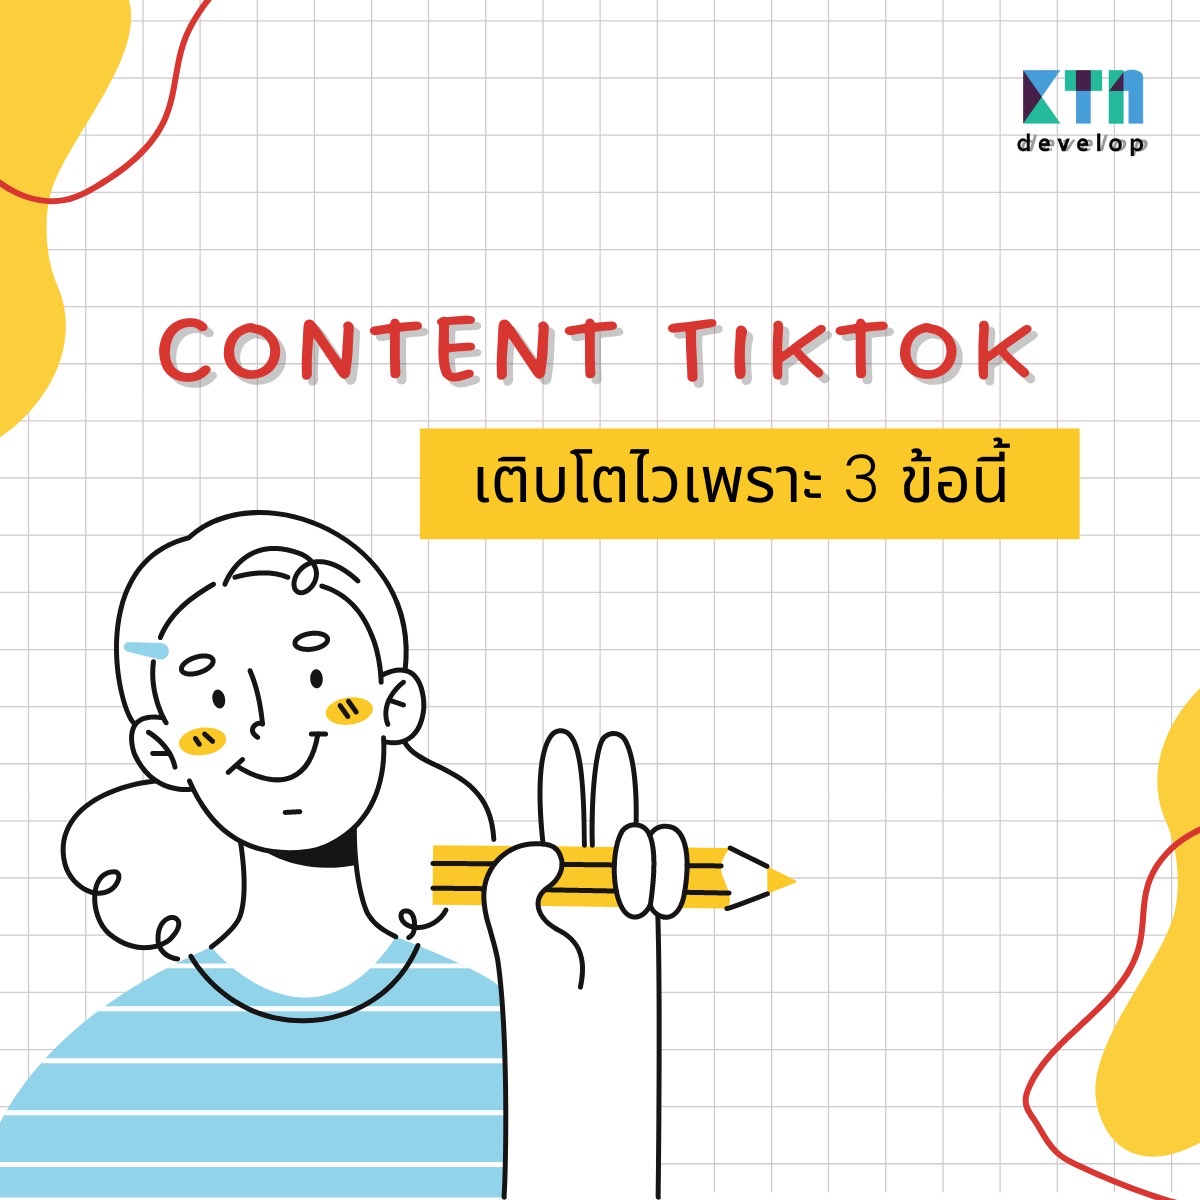 Content Tiktok ให้เติบโตไวเพราะ 3 ข้อนี้